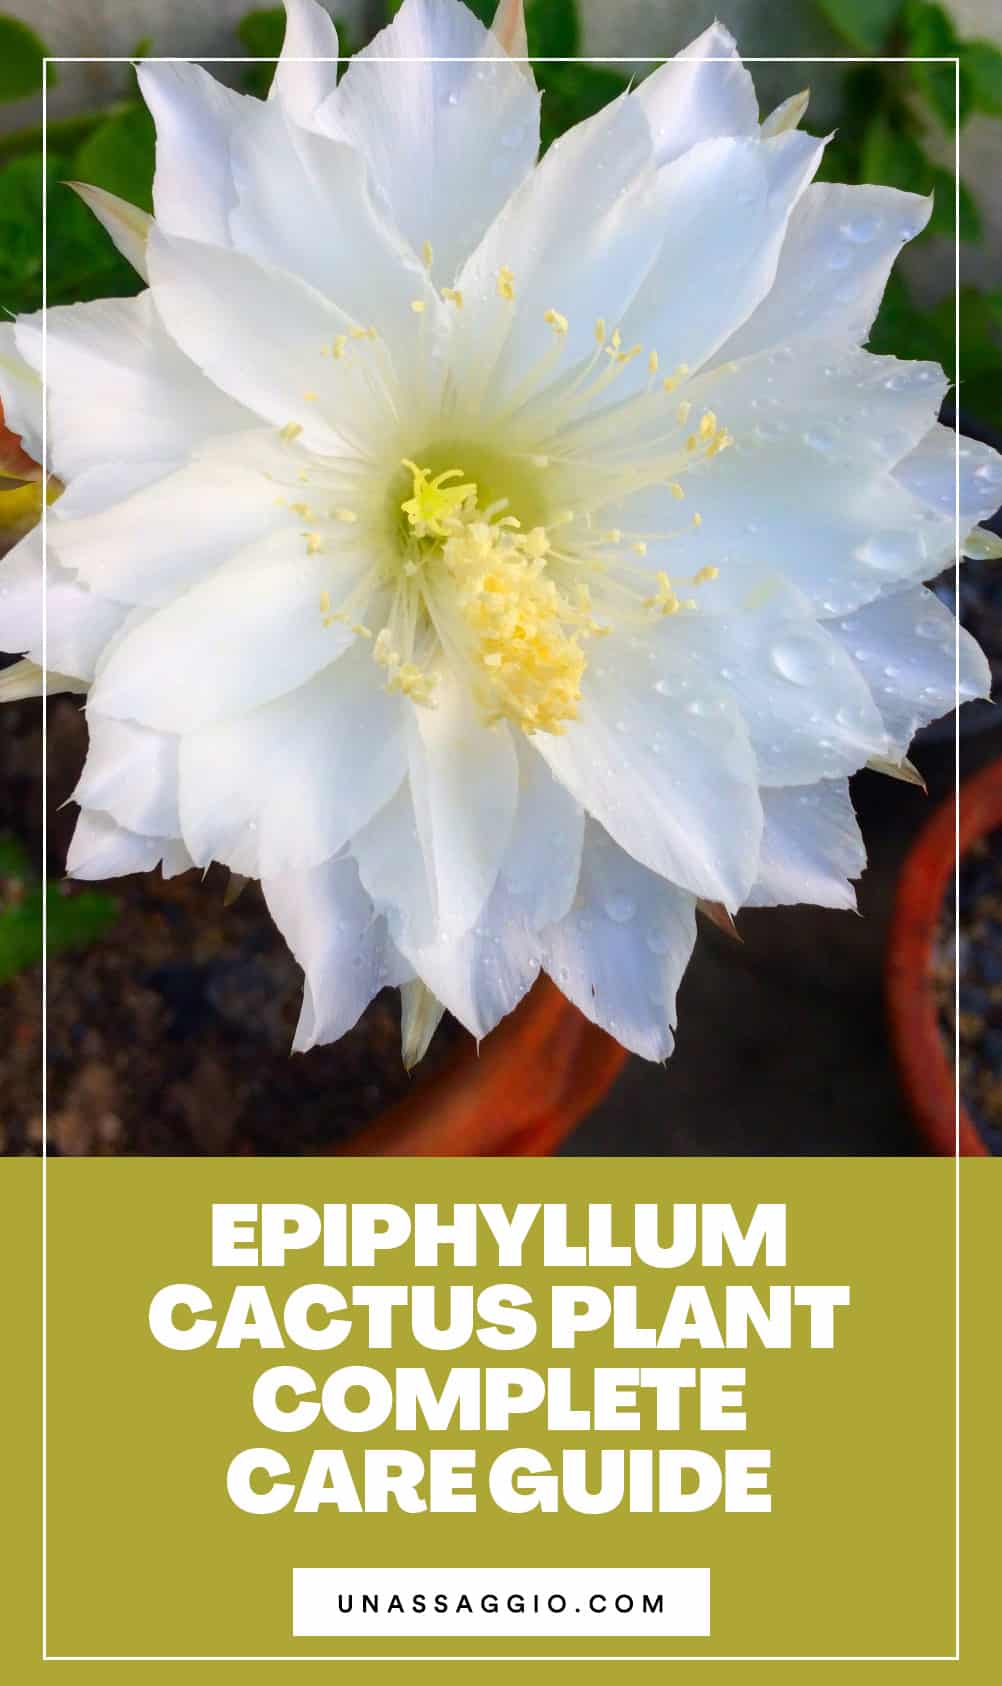 Epiphyllum cactus plant